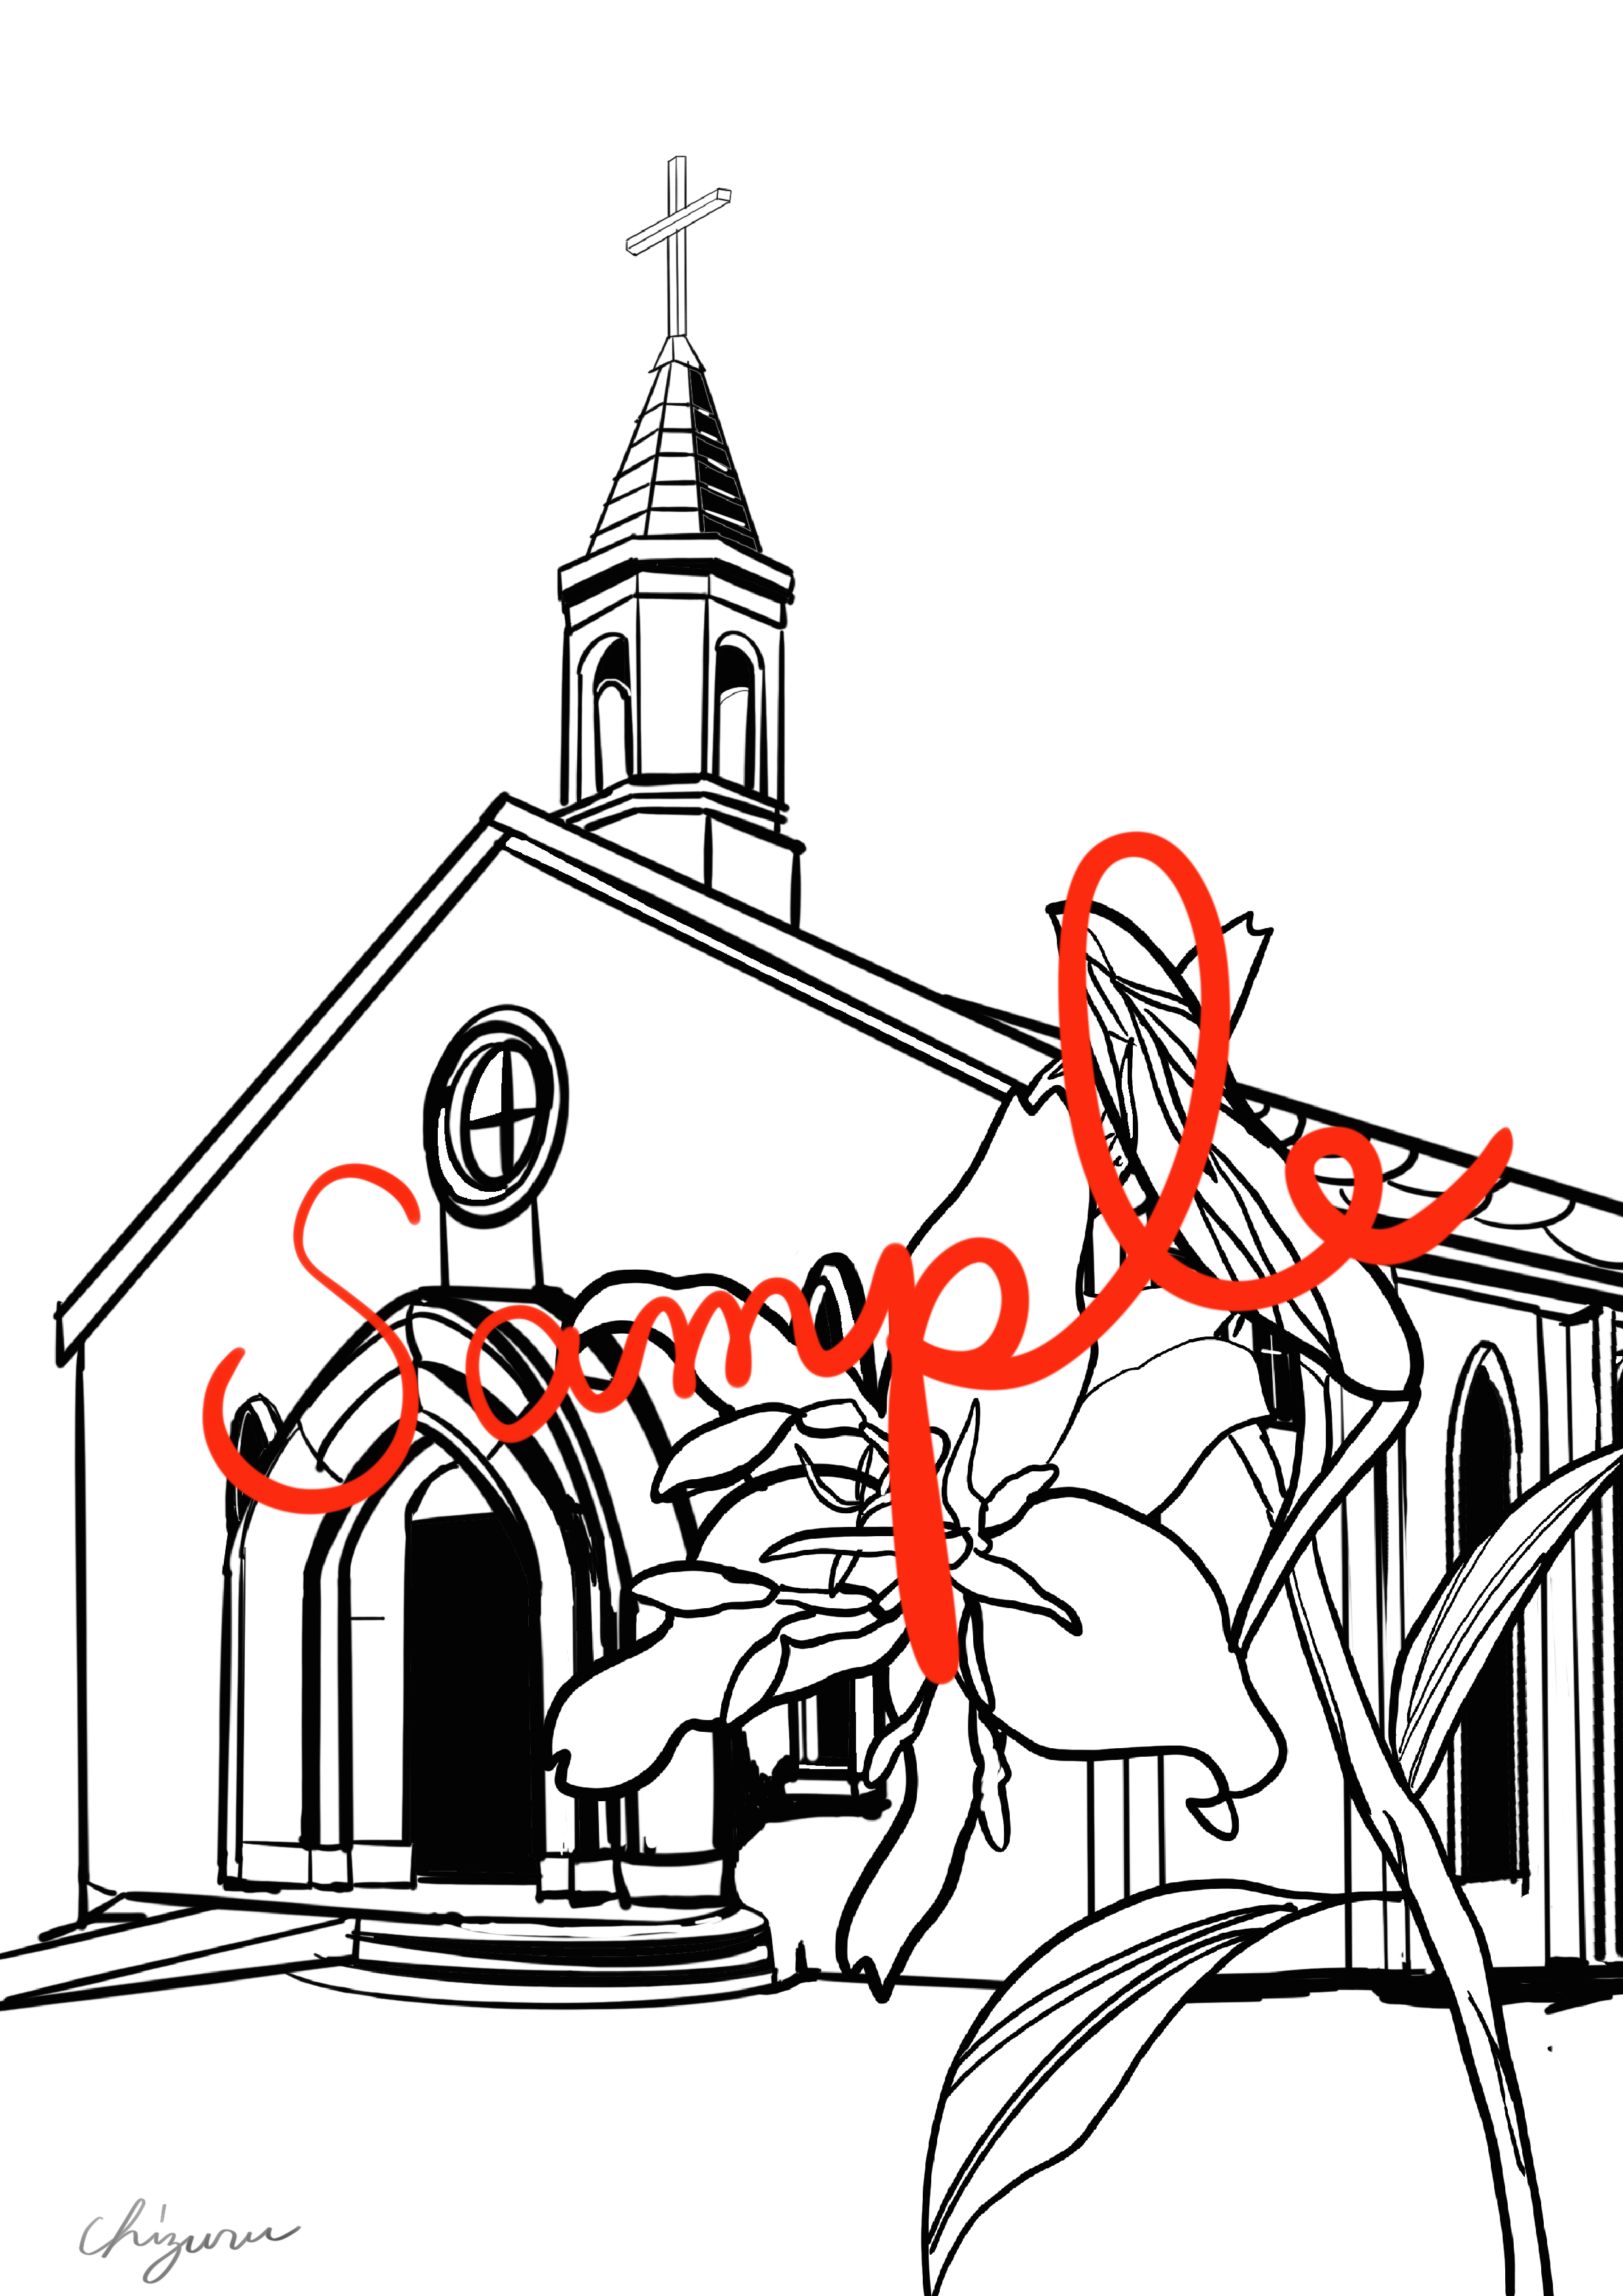 【切り絵セット】百合の教会の作品で気軽に切り絵を始めてみませんか。